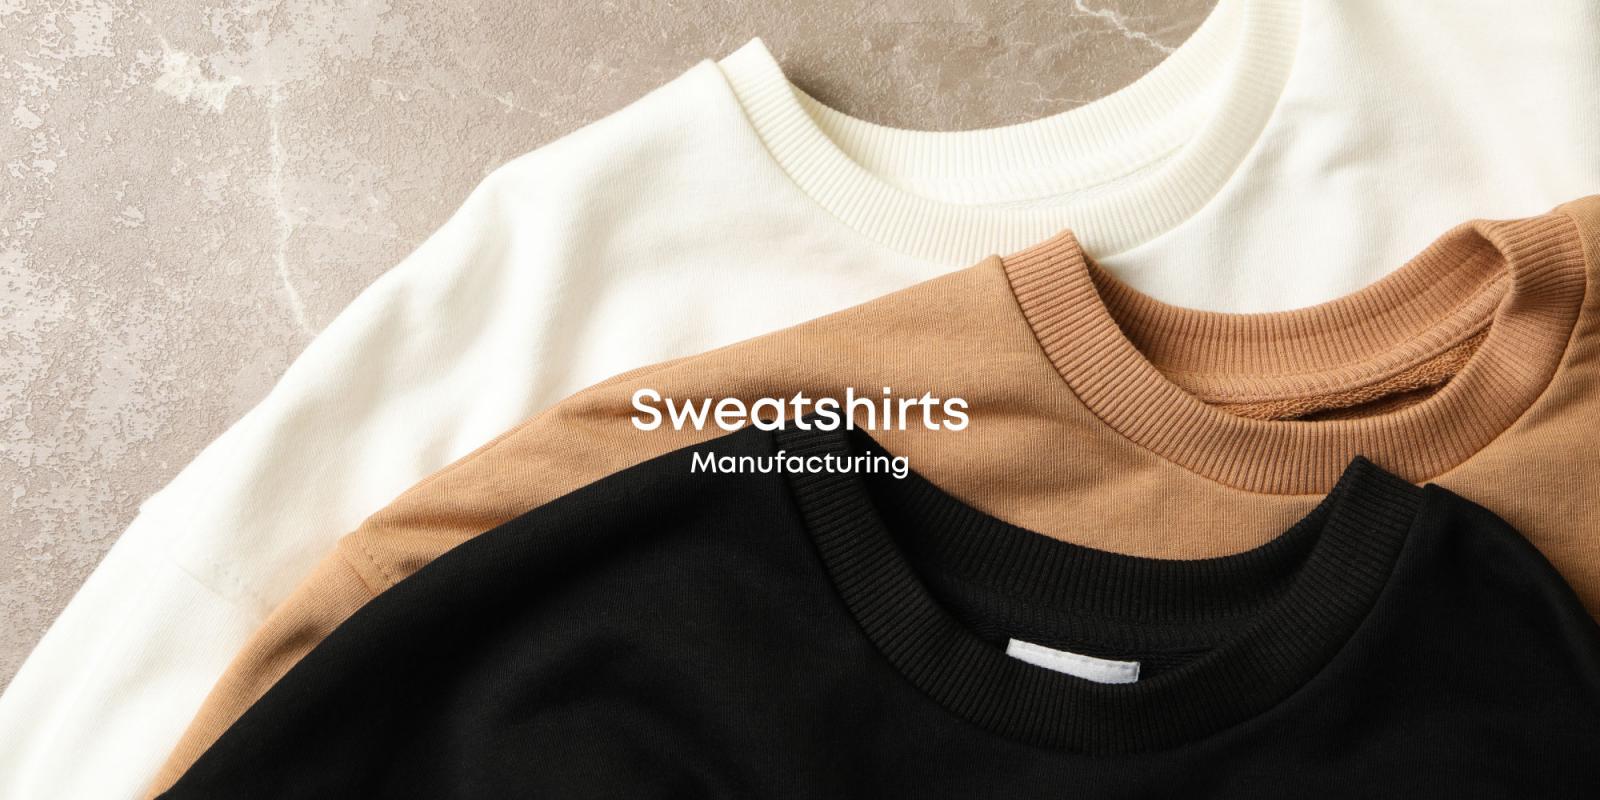 Sweatshirts Manufacturing